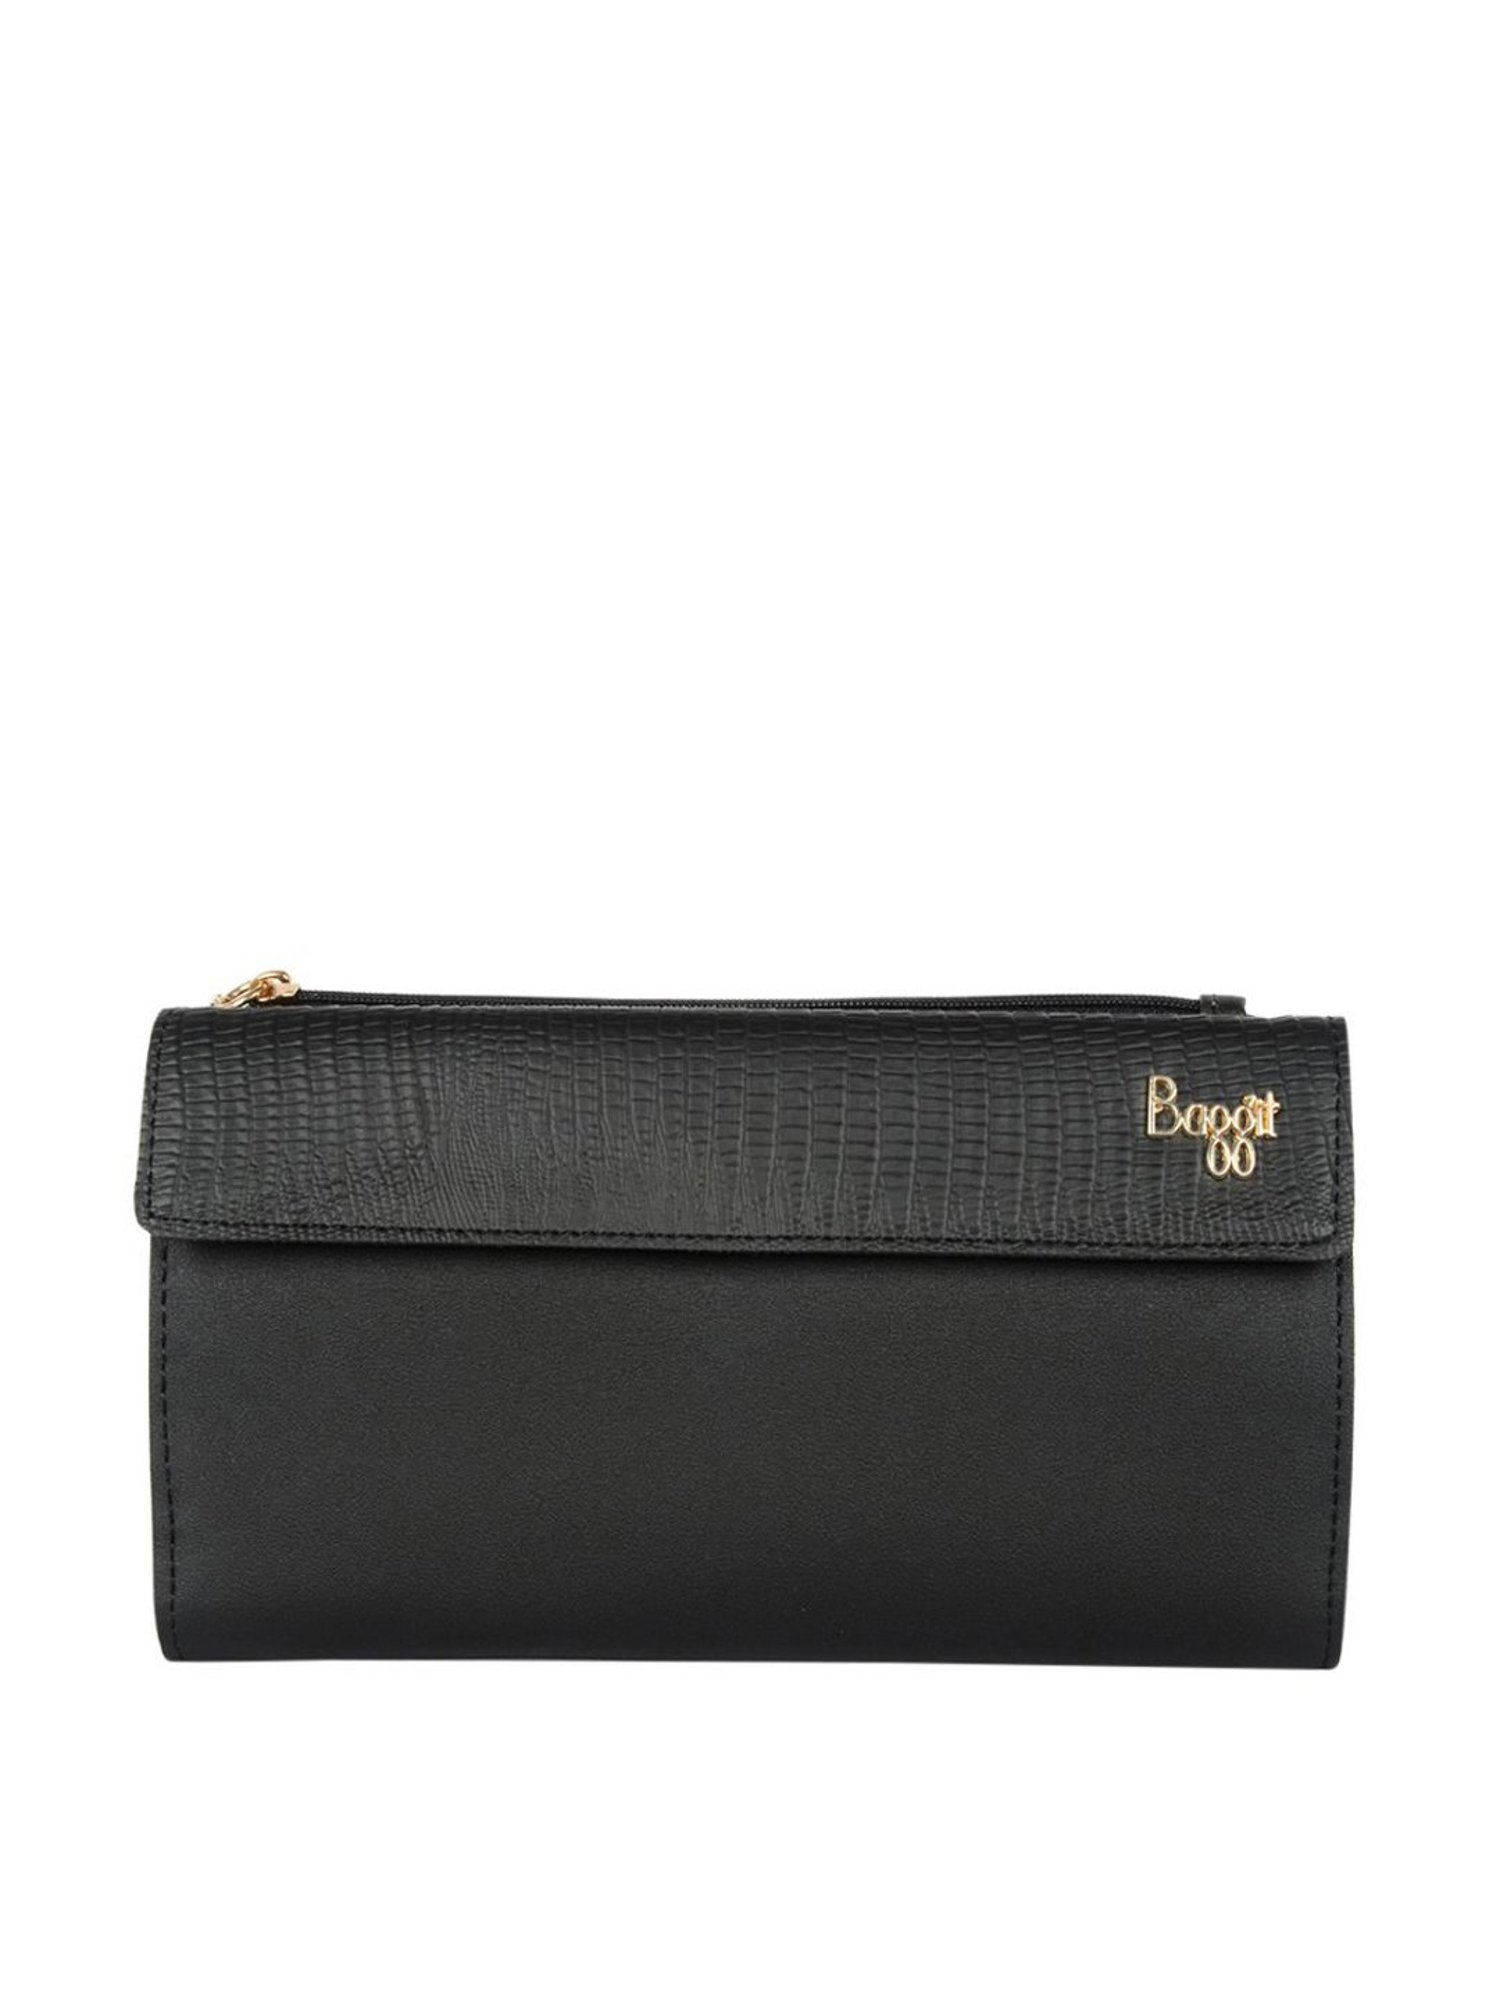 Buy Baggit - GG Lxe Lifafa Orange Women Handbags Online